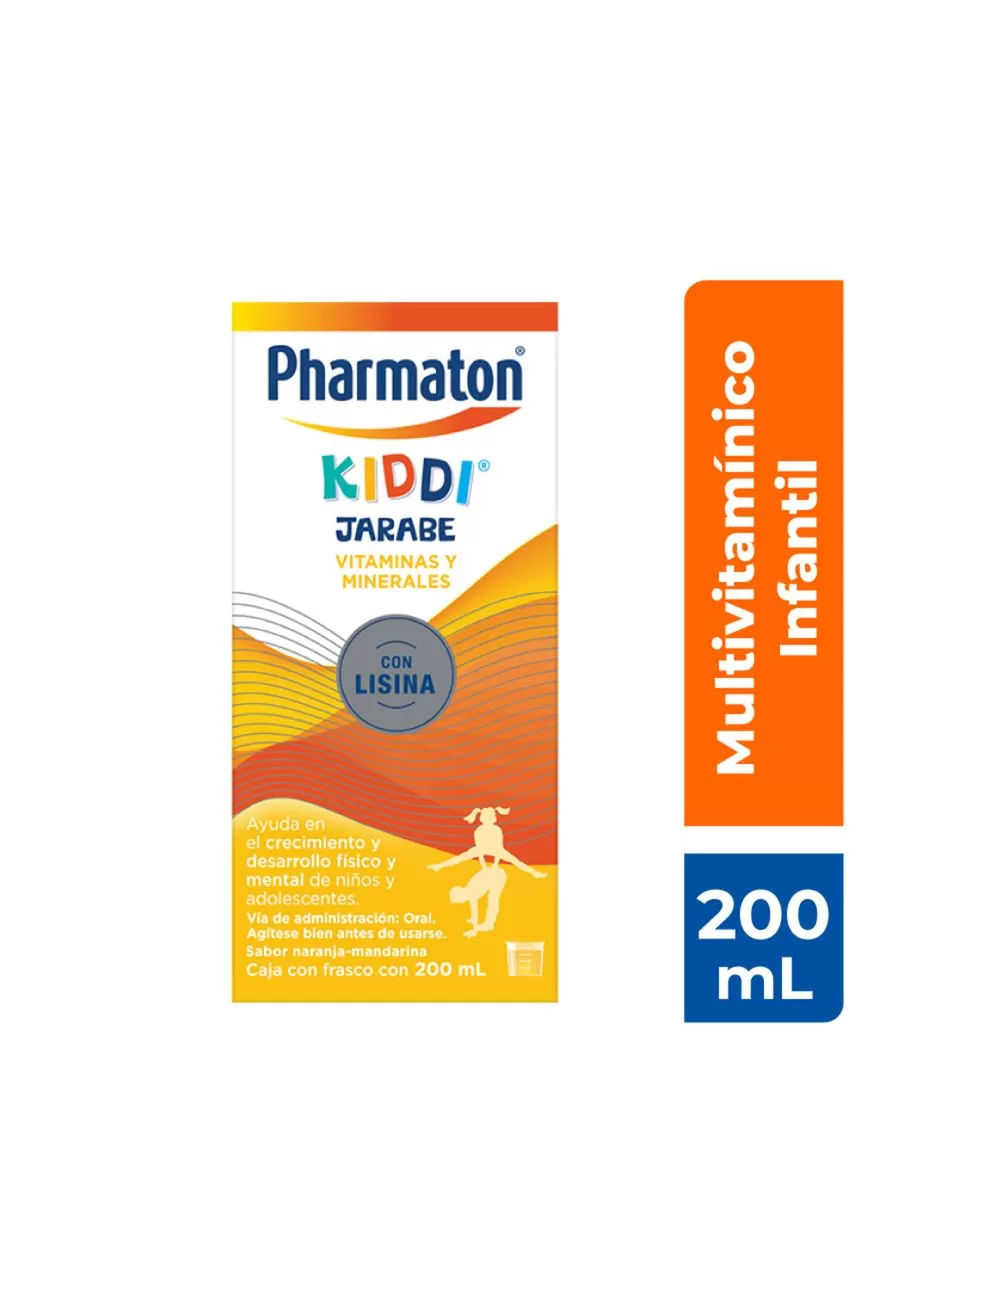 Pharmaton kiddi multivitamínico para niños jarabe 200 ml, sabor naranja-mandarina.